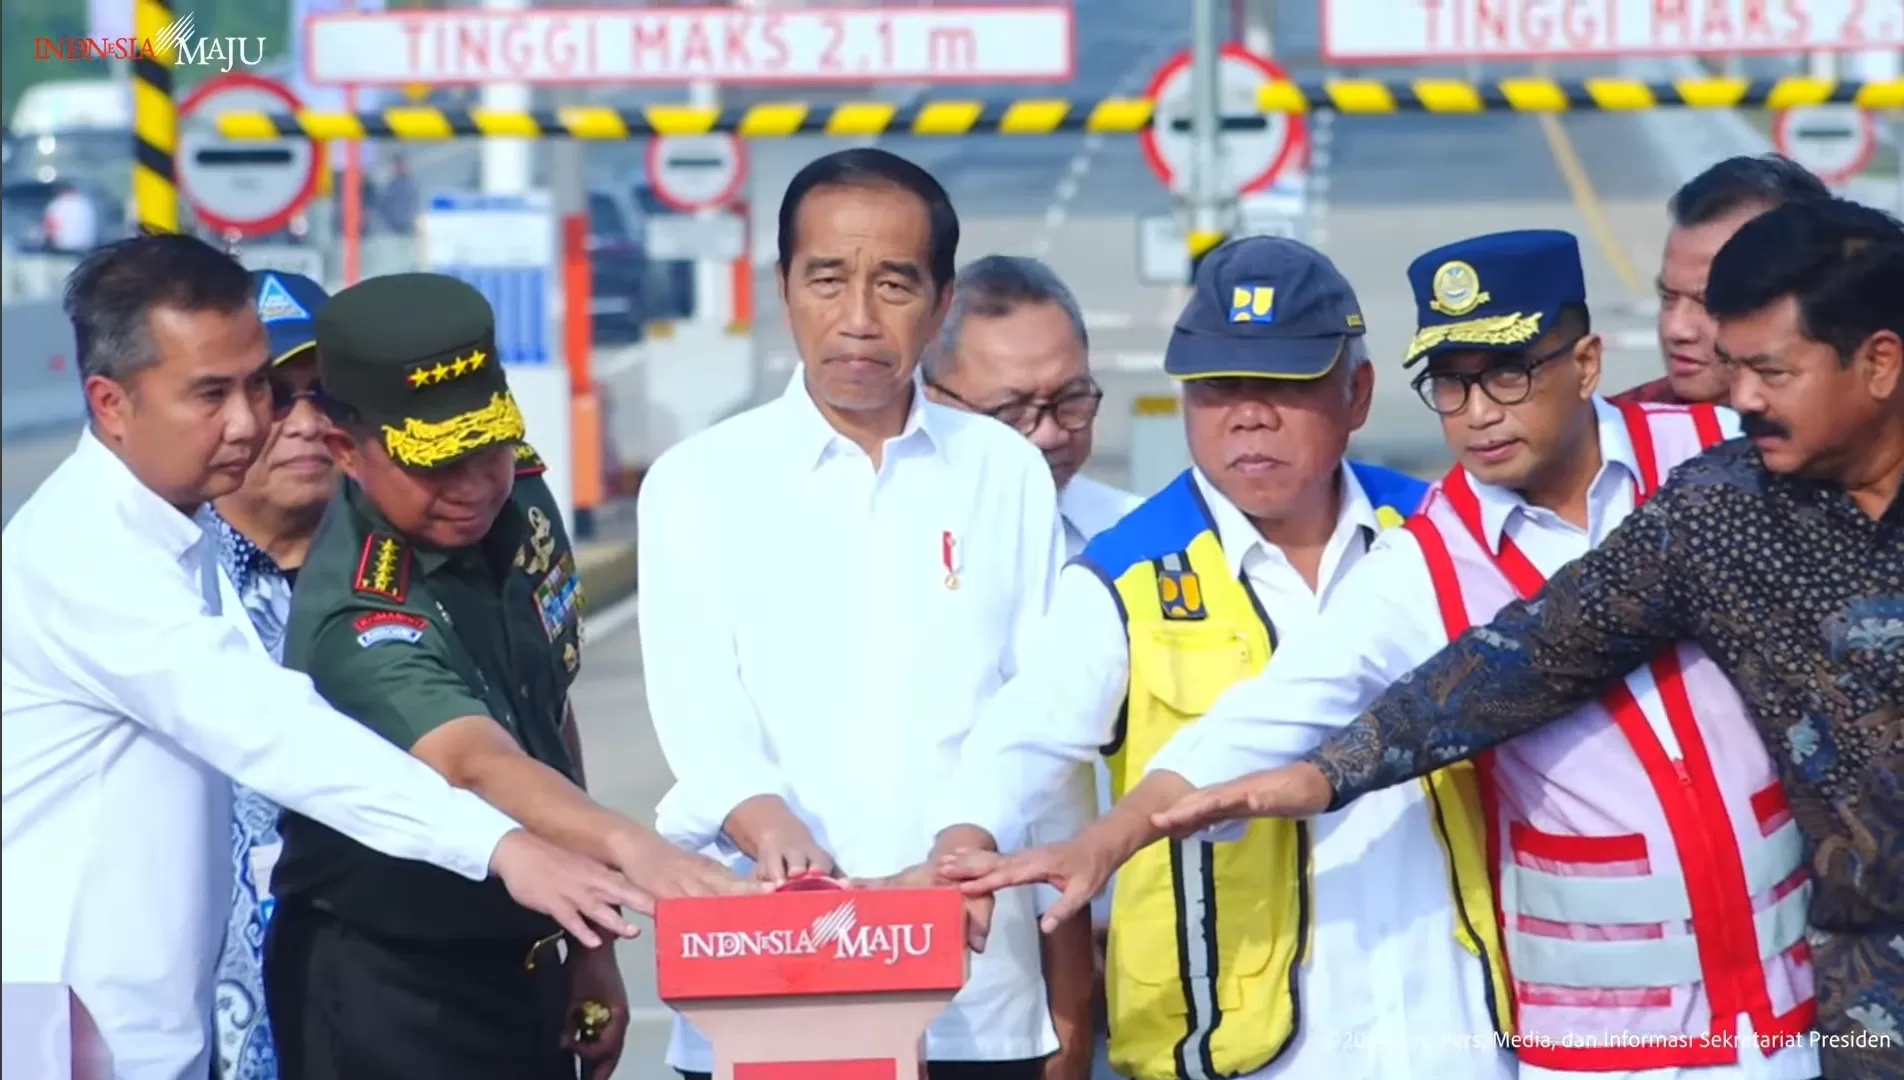 Resmi! Jalan Tol Pamulang-Cinere-Raya Bogor Sukses Diresmikan Presiden Jokowi Pagi Ini